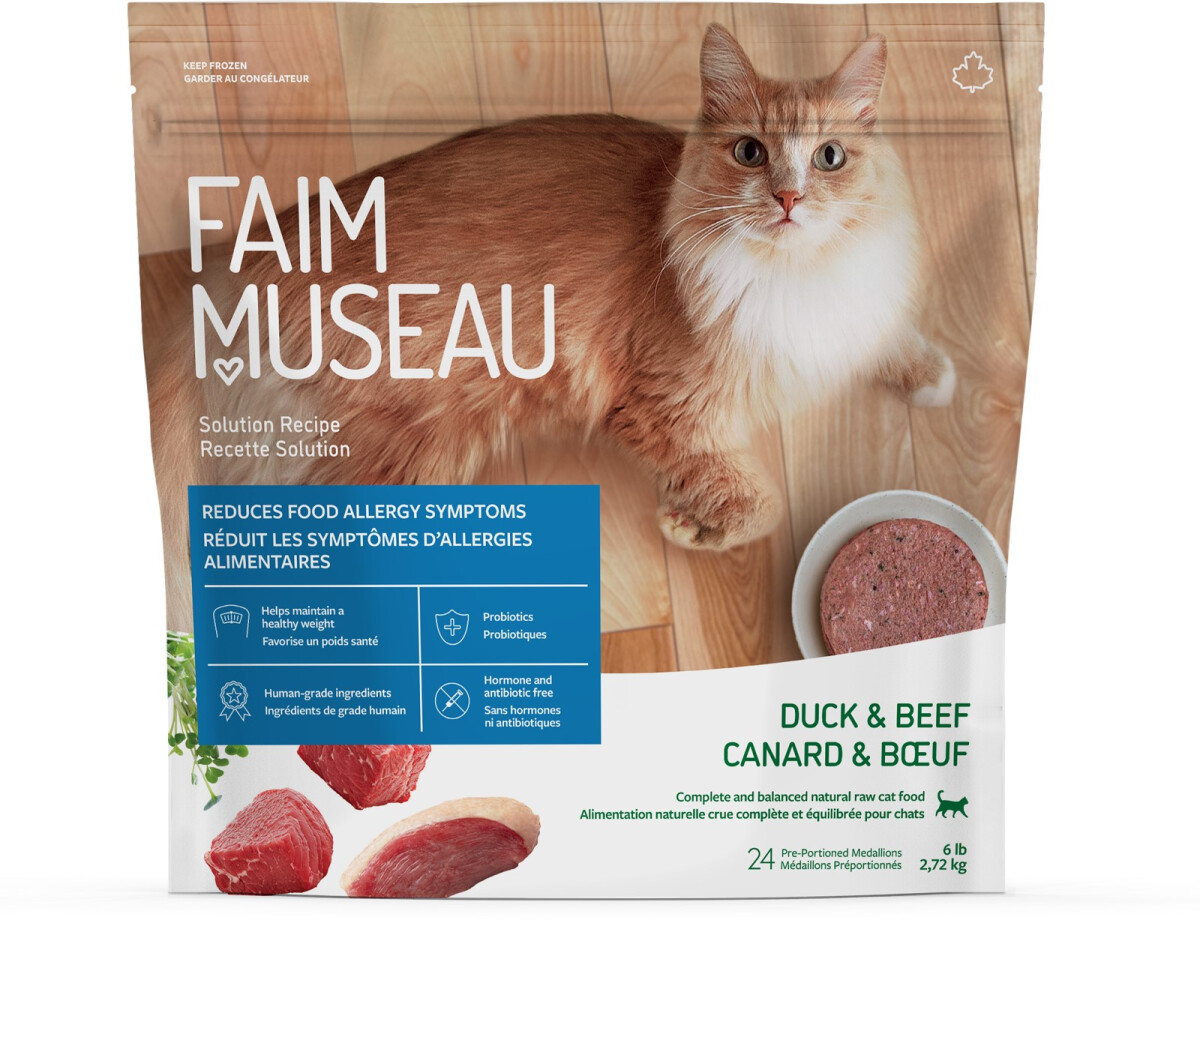 Fm326 - Nourriture crue pour chats recette solution canard et boeuf - Faim Museau